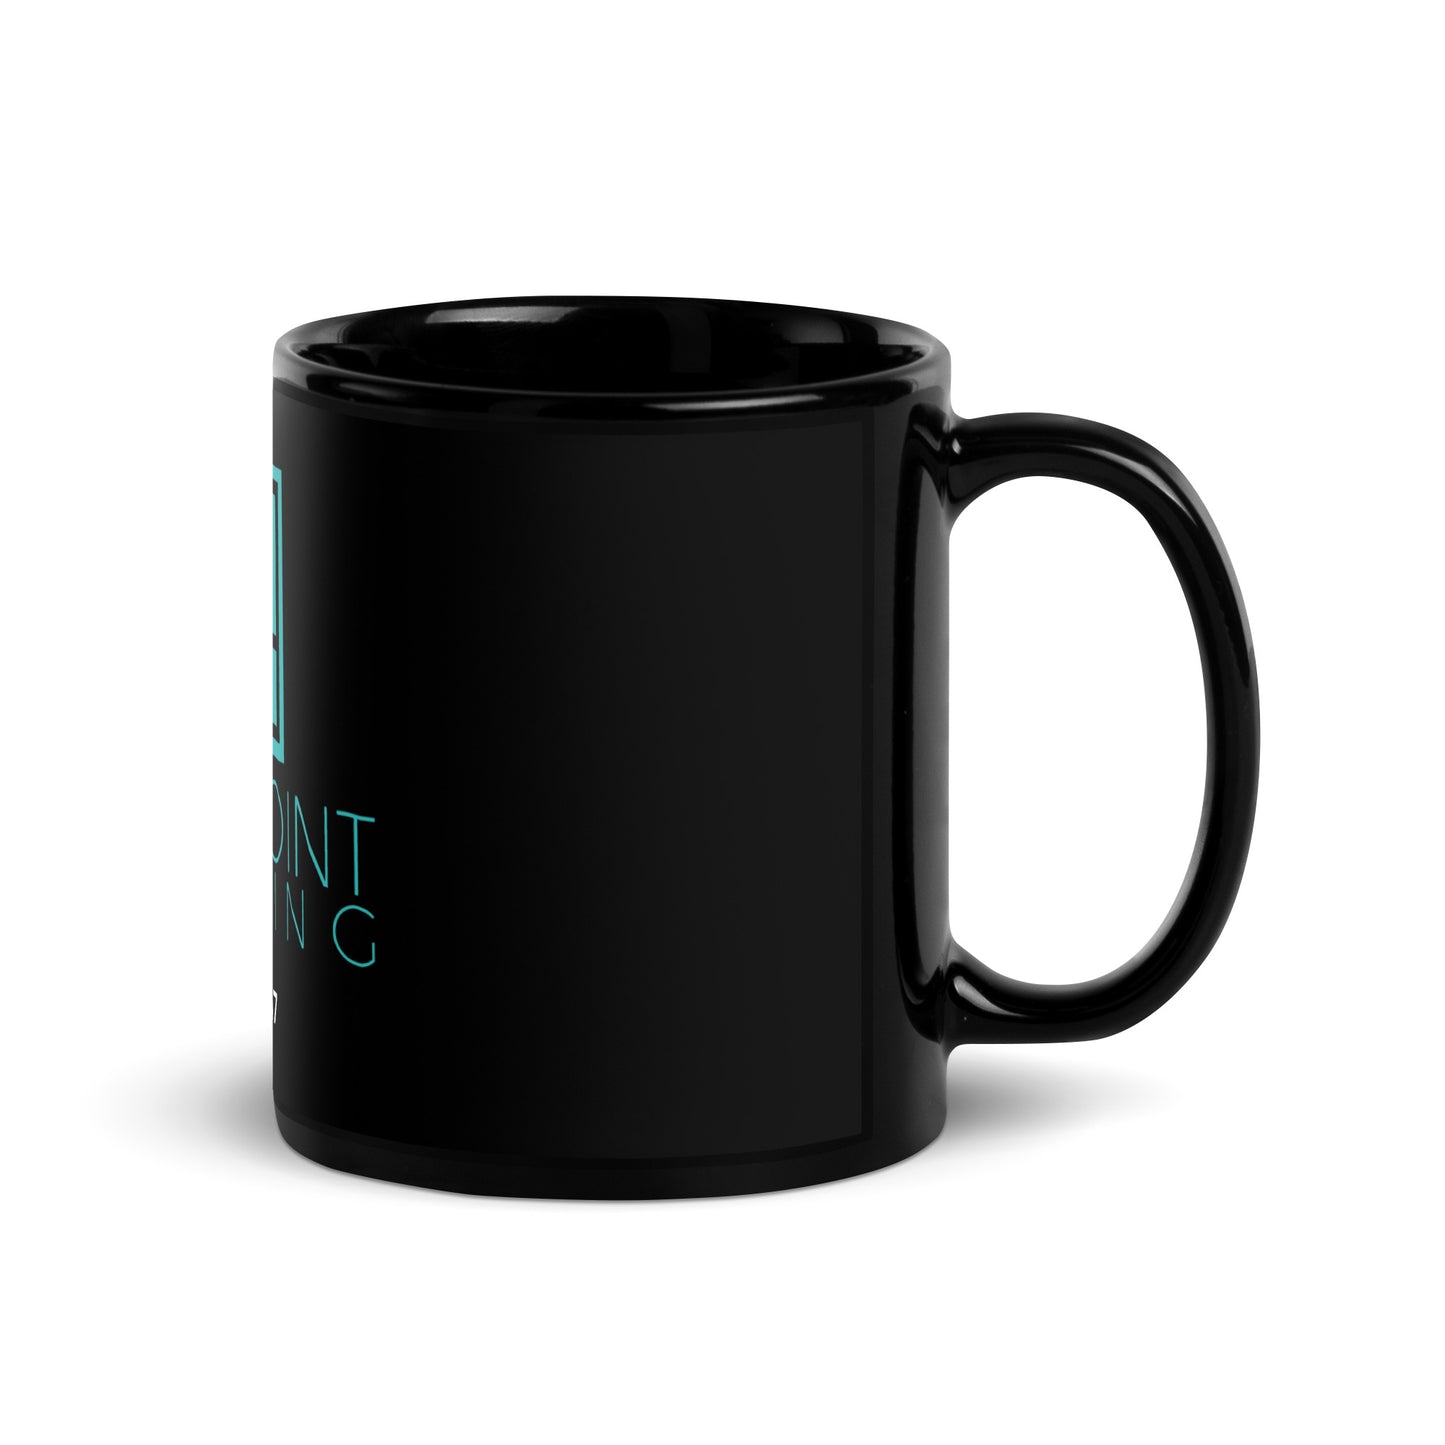 BP Black Coffee Mug